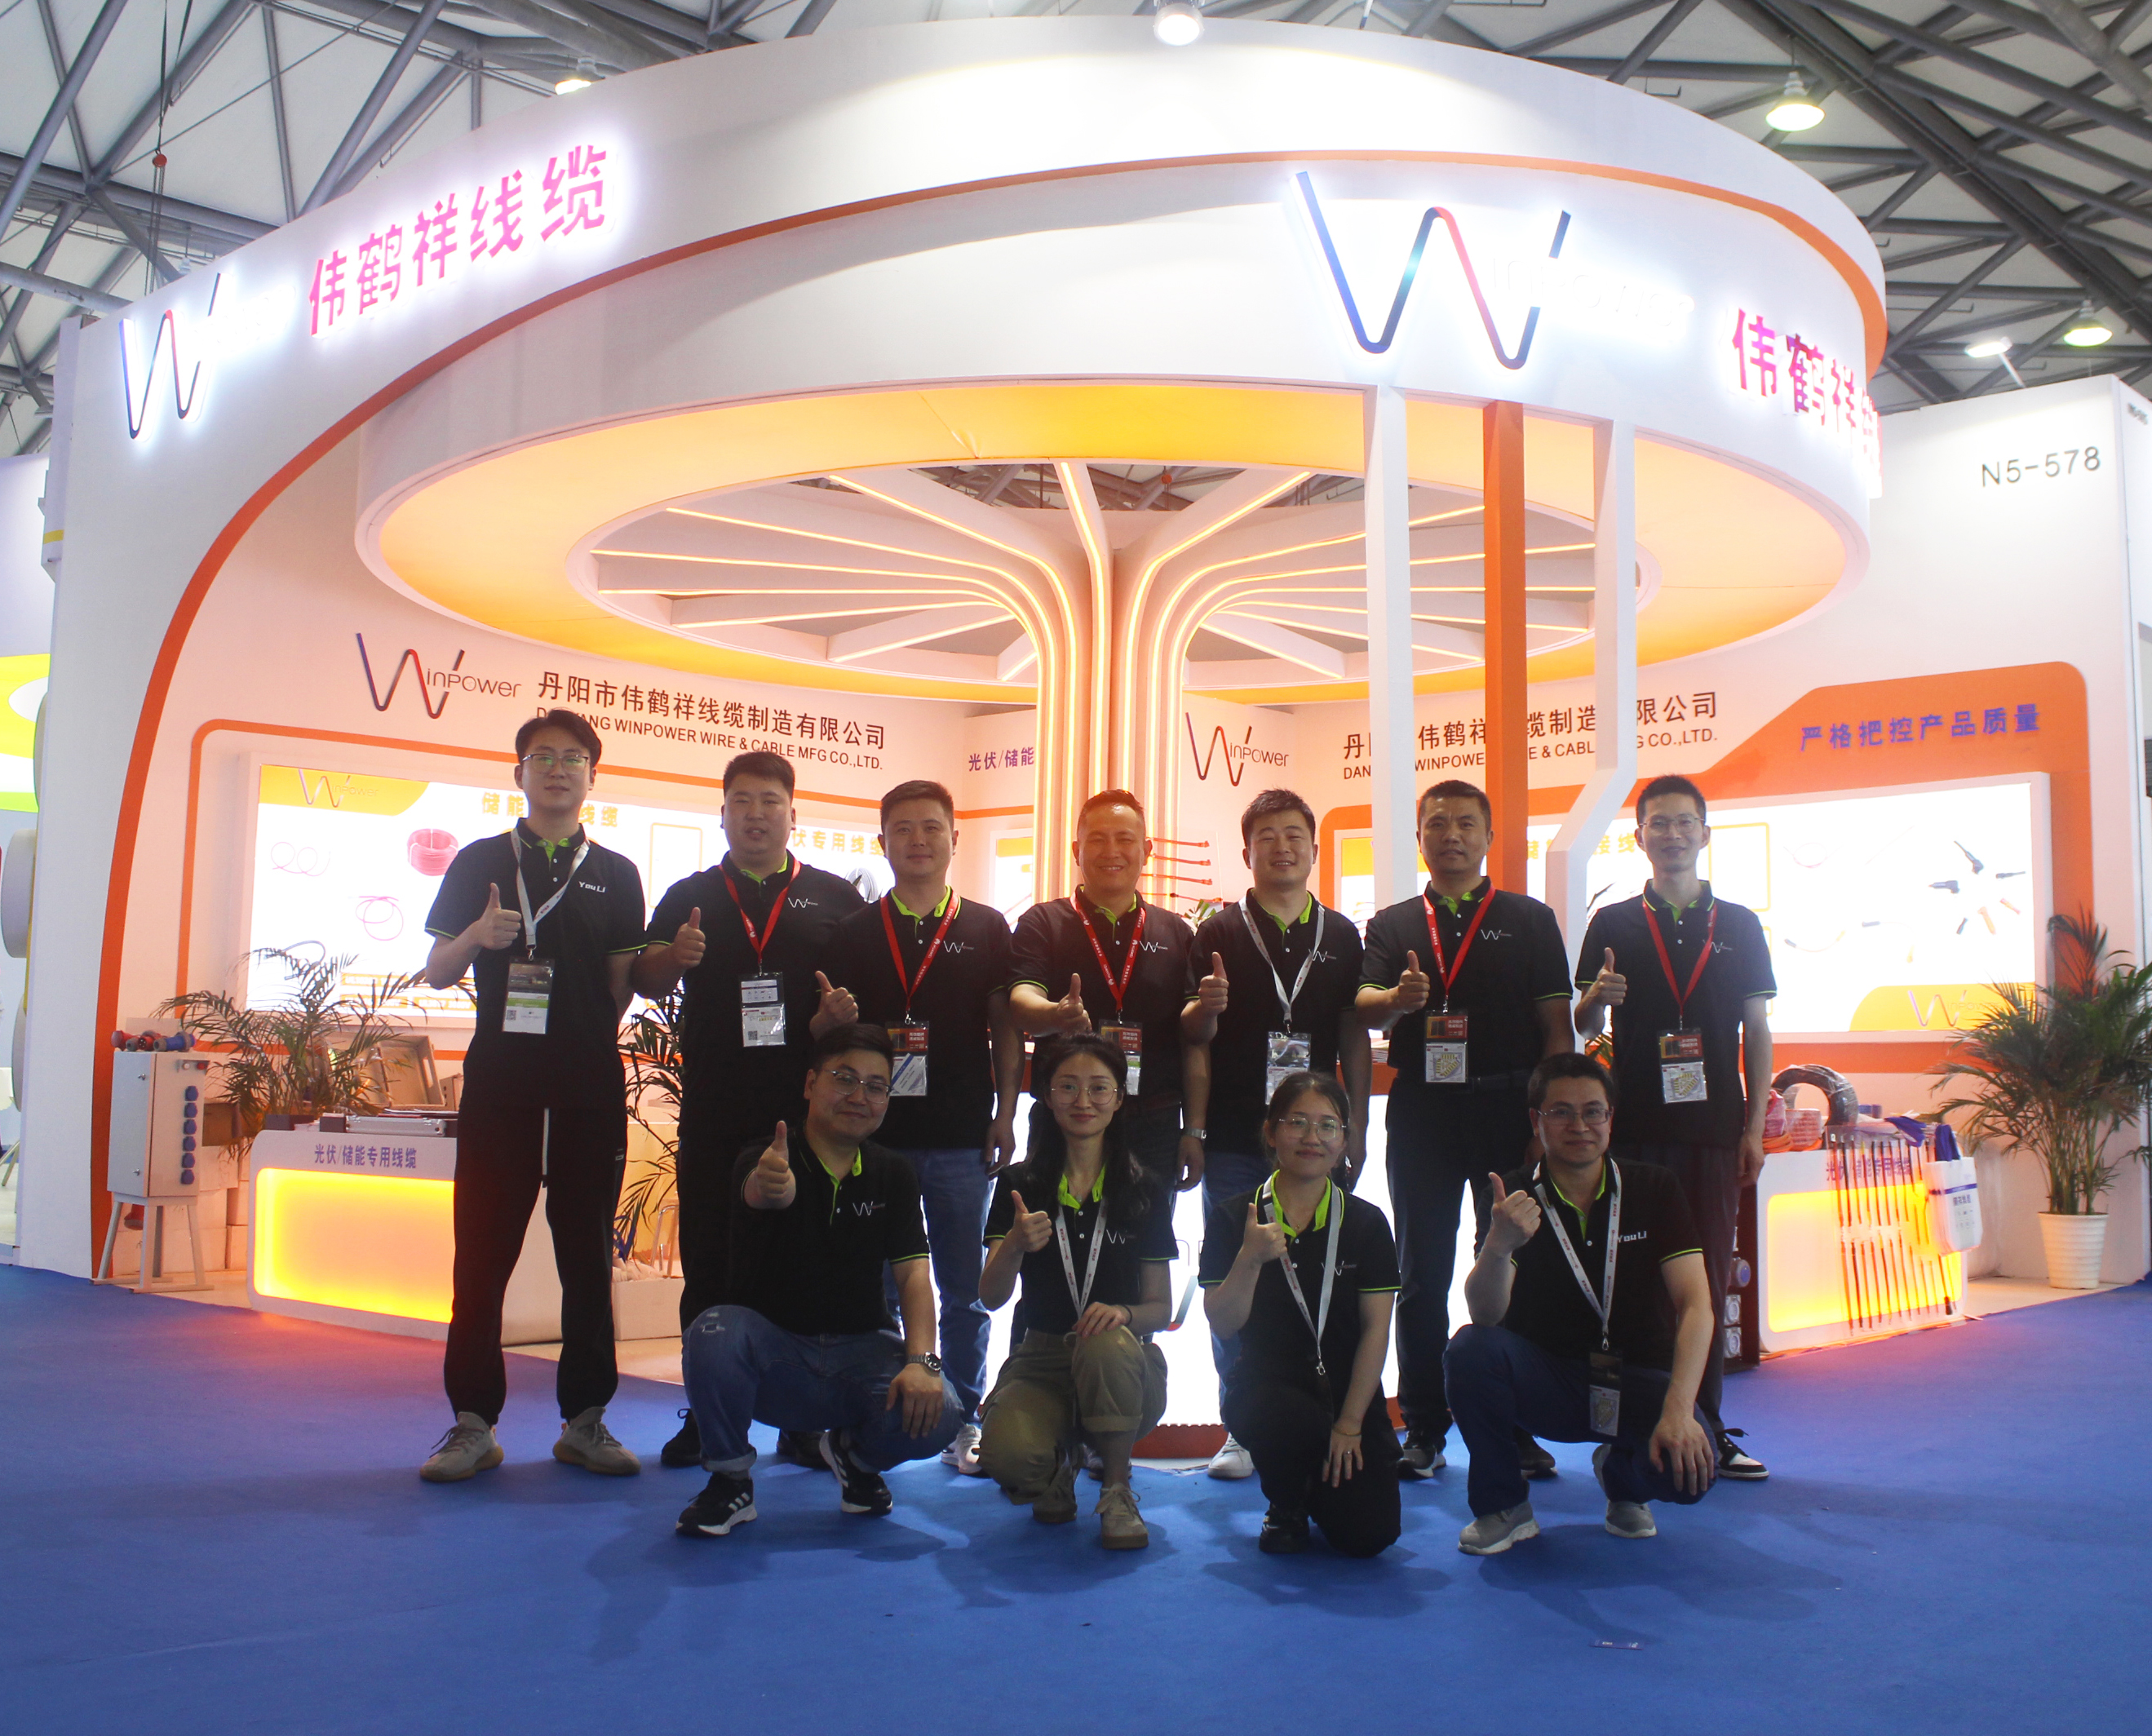 اخیراً، شانزدهمین کنفرانس و نمایشگاه بین المللی فتوولتائیک خورشیدی و انرژی هوشمند SNEC (شانگهای) سه روزه در شانگهای به پایان رسید.